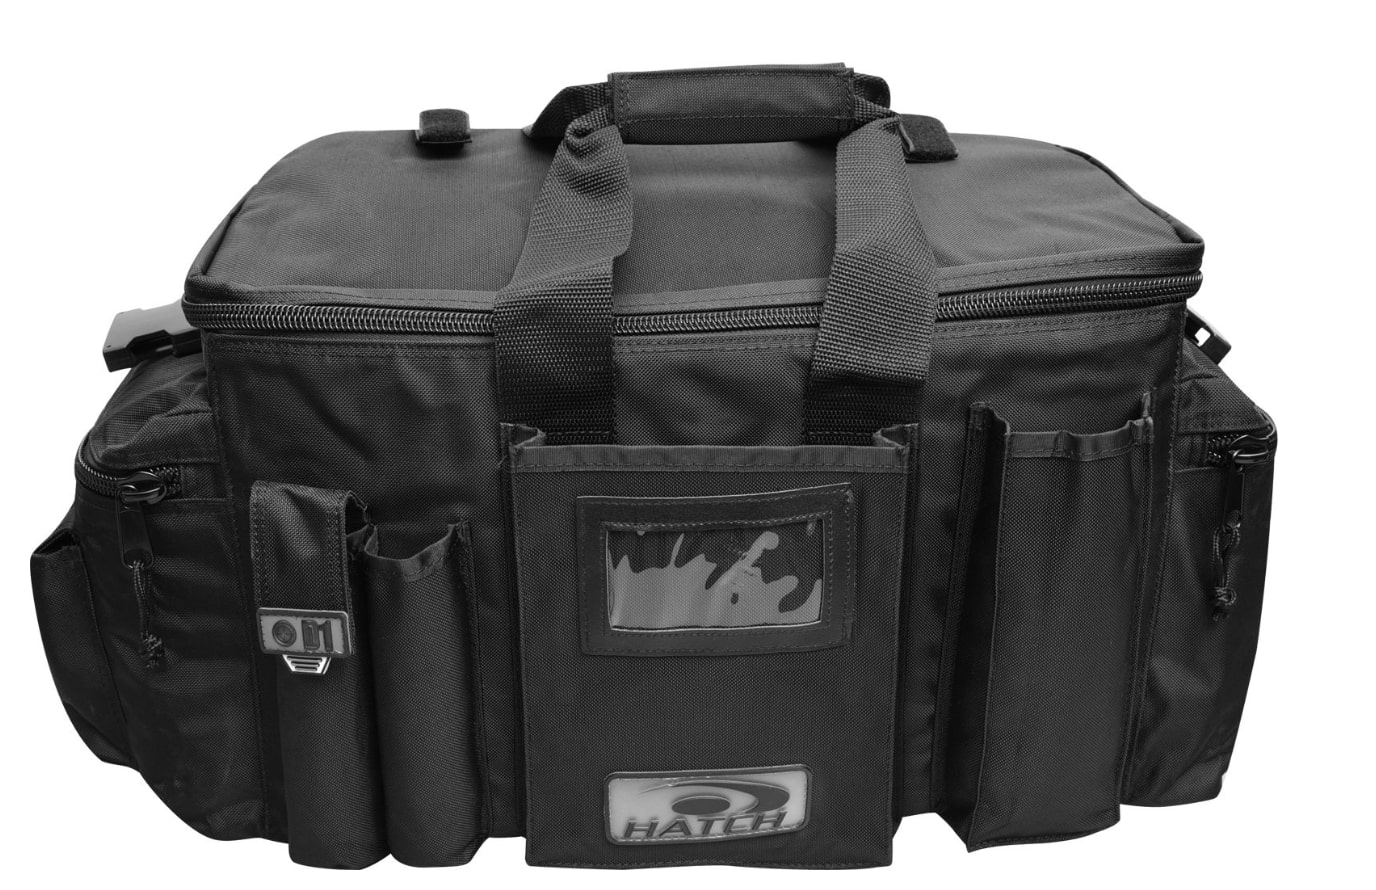 Hatch D1 black kit bag